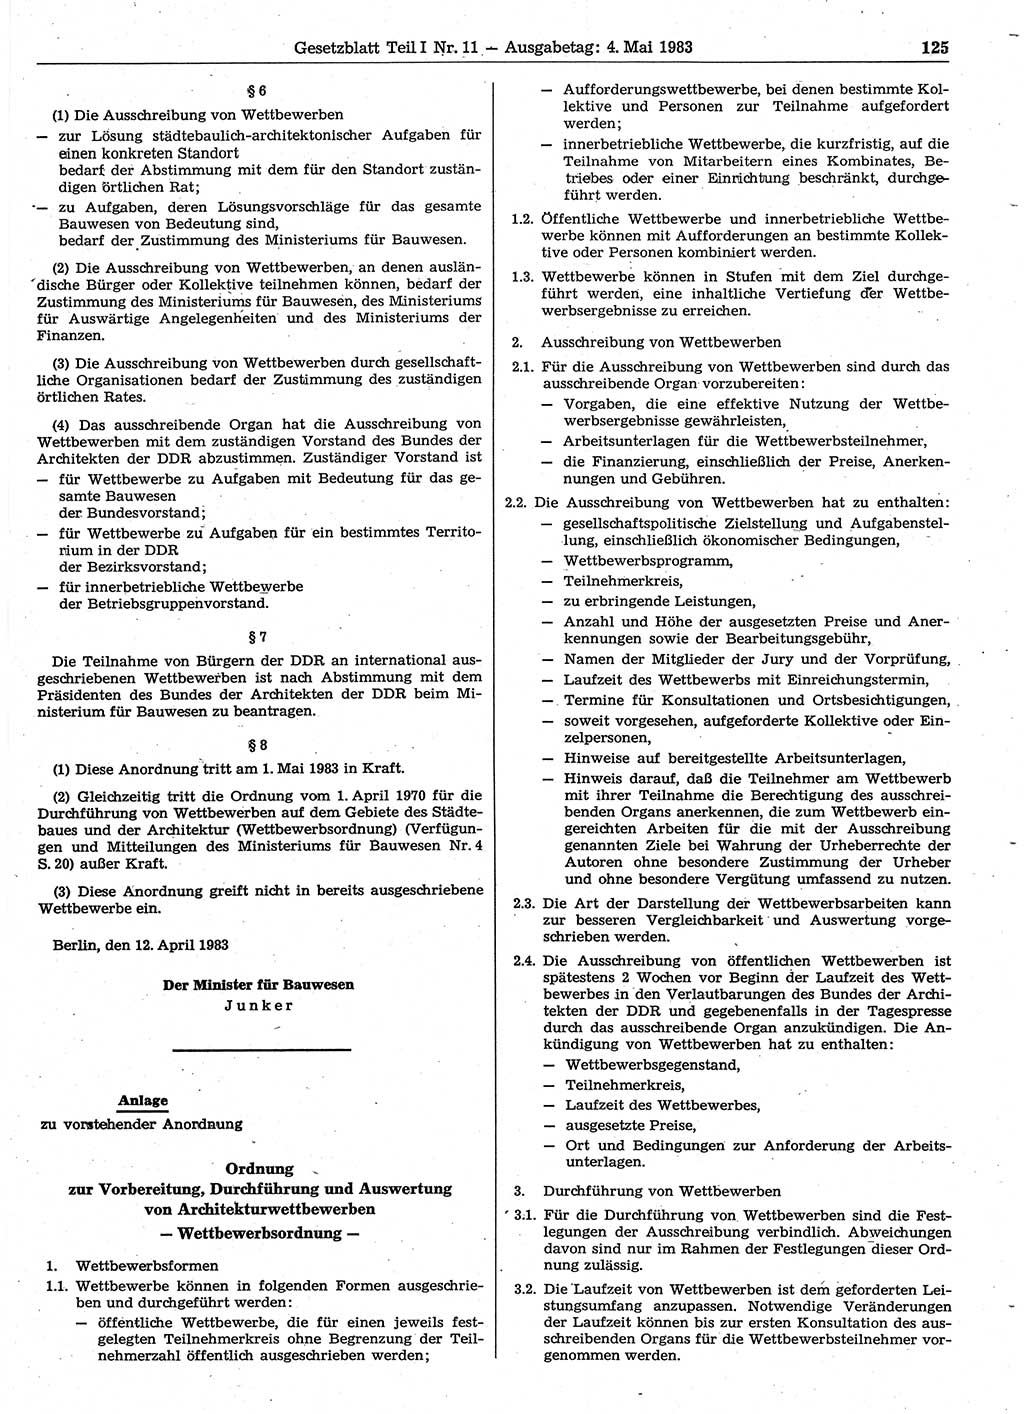 Gesetzblatt (GBl.) der Deutschen Demokratischen Republik (DDR) Teil Ⅰ 1983, Seite 125 (GBl. DDR Ⅰ 1983, S. 125)